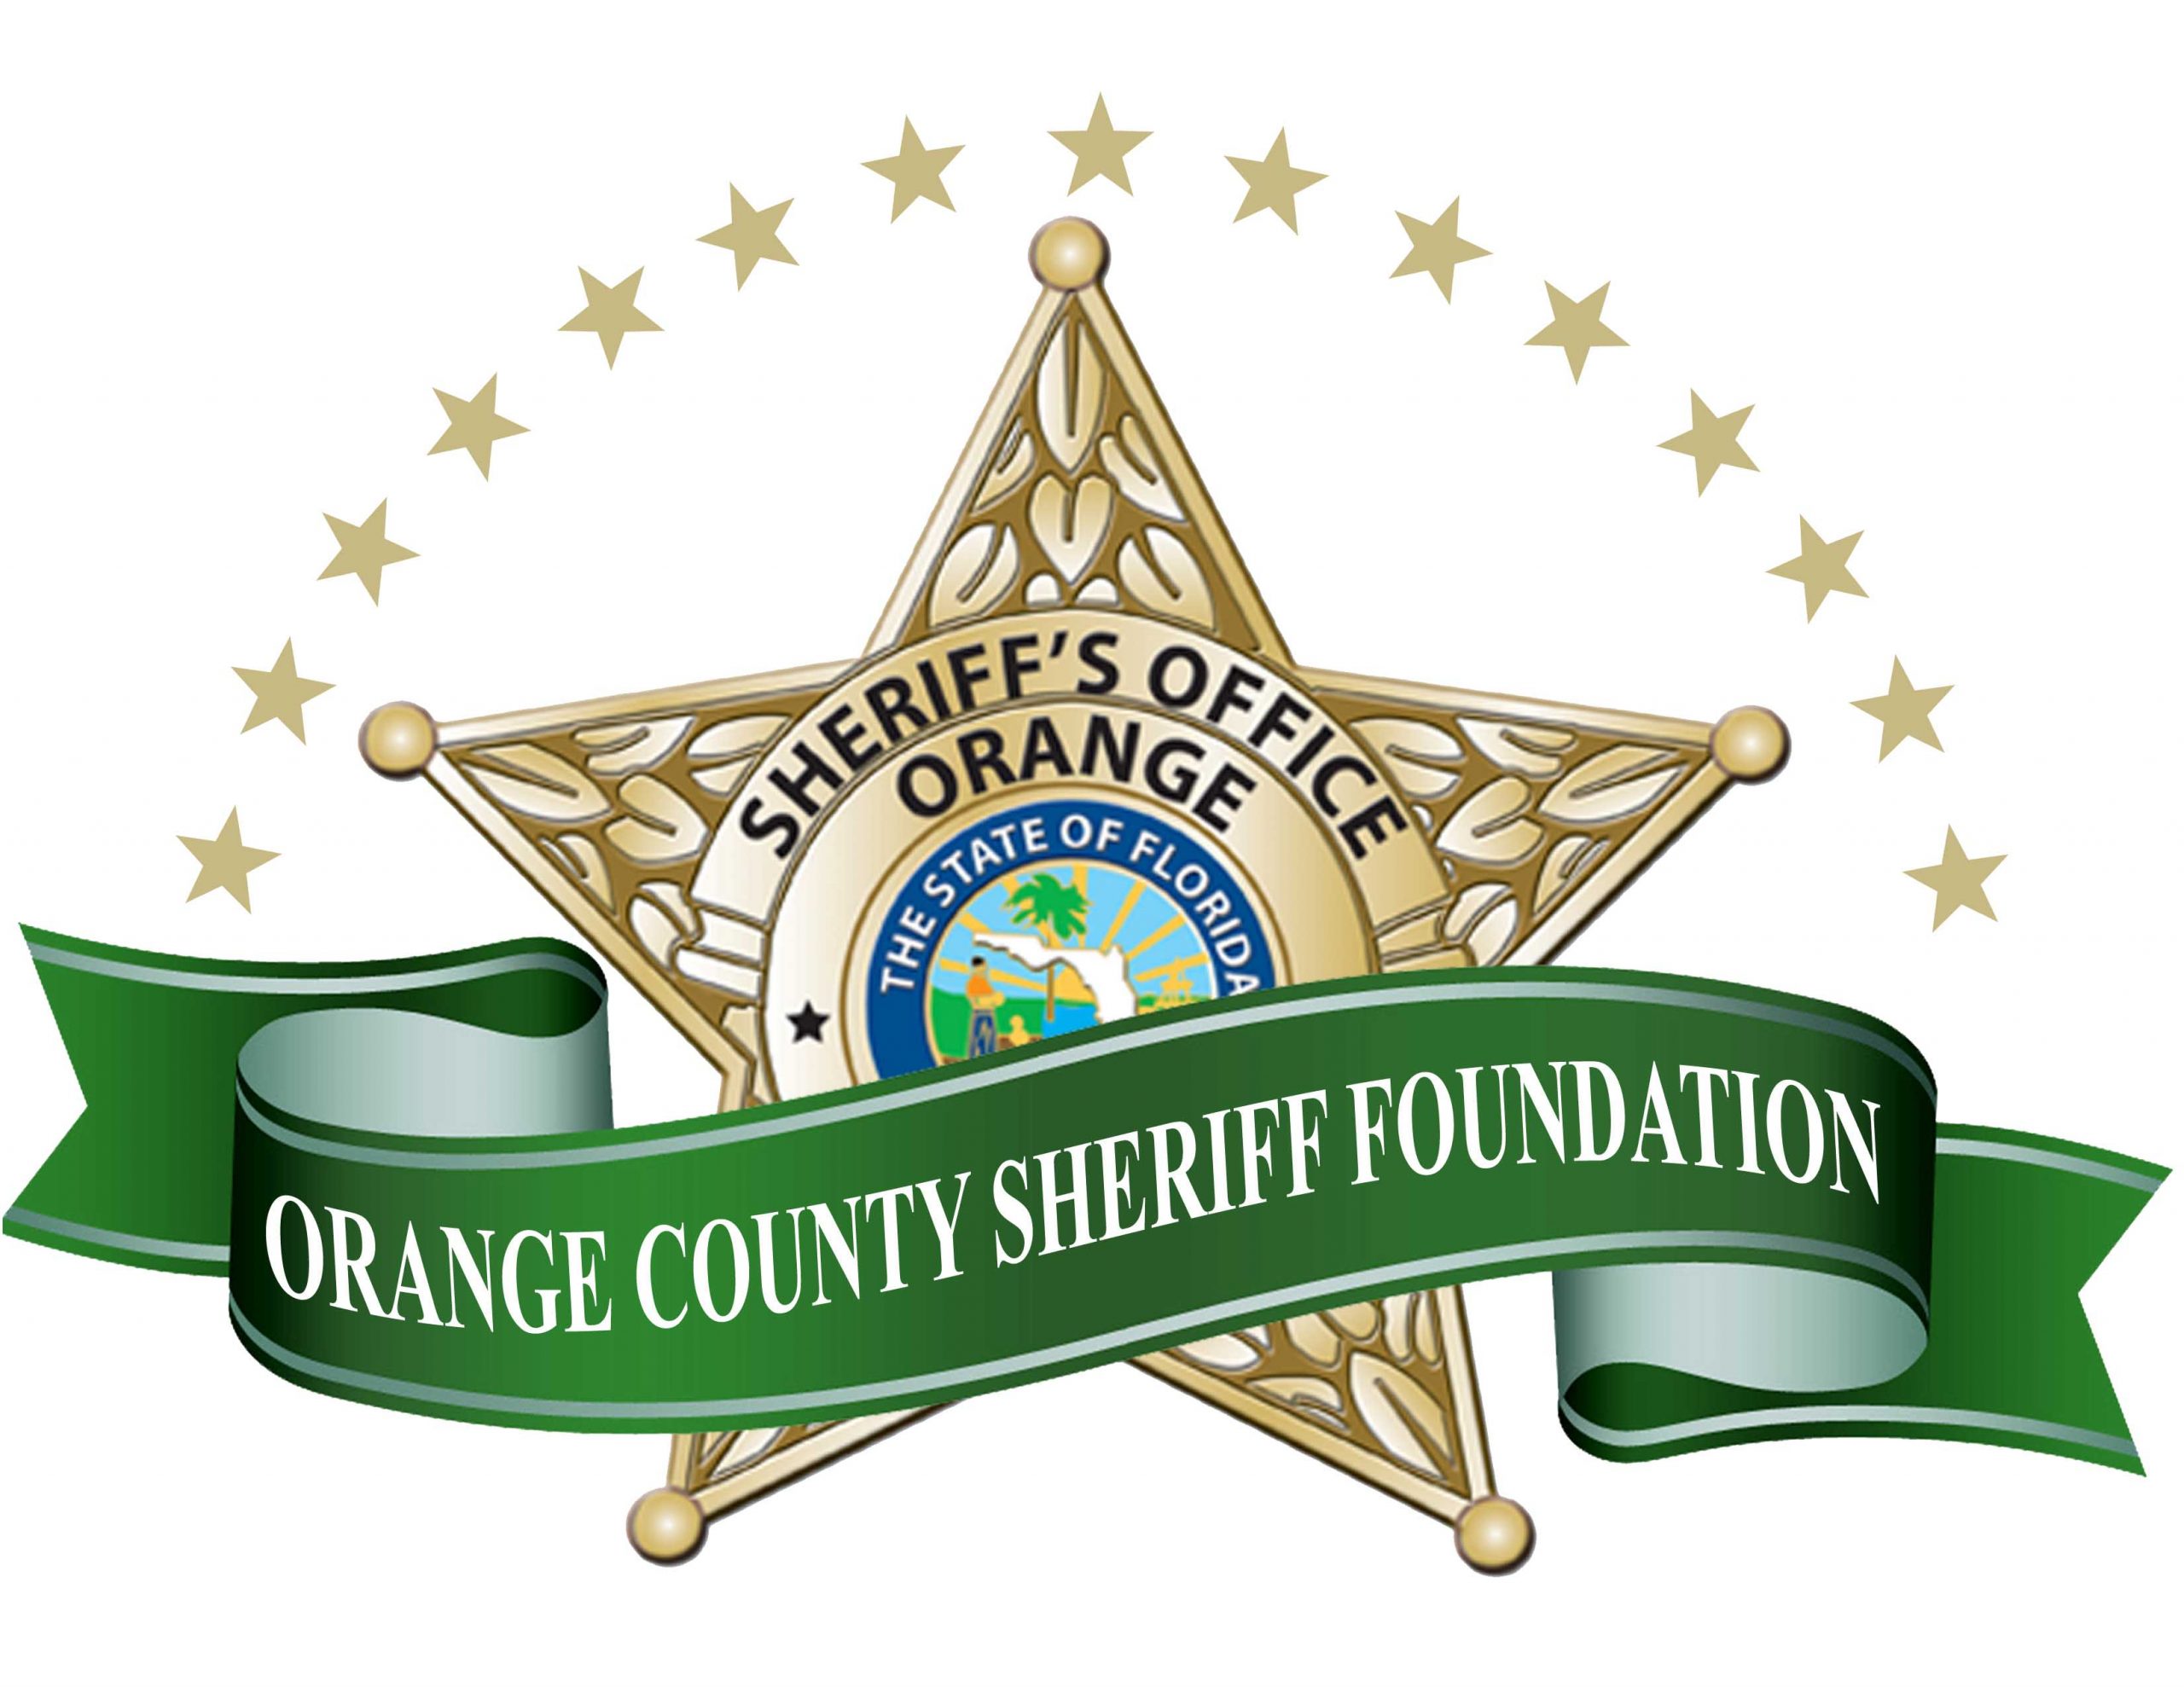 Orange County Sheriff Foundation